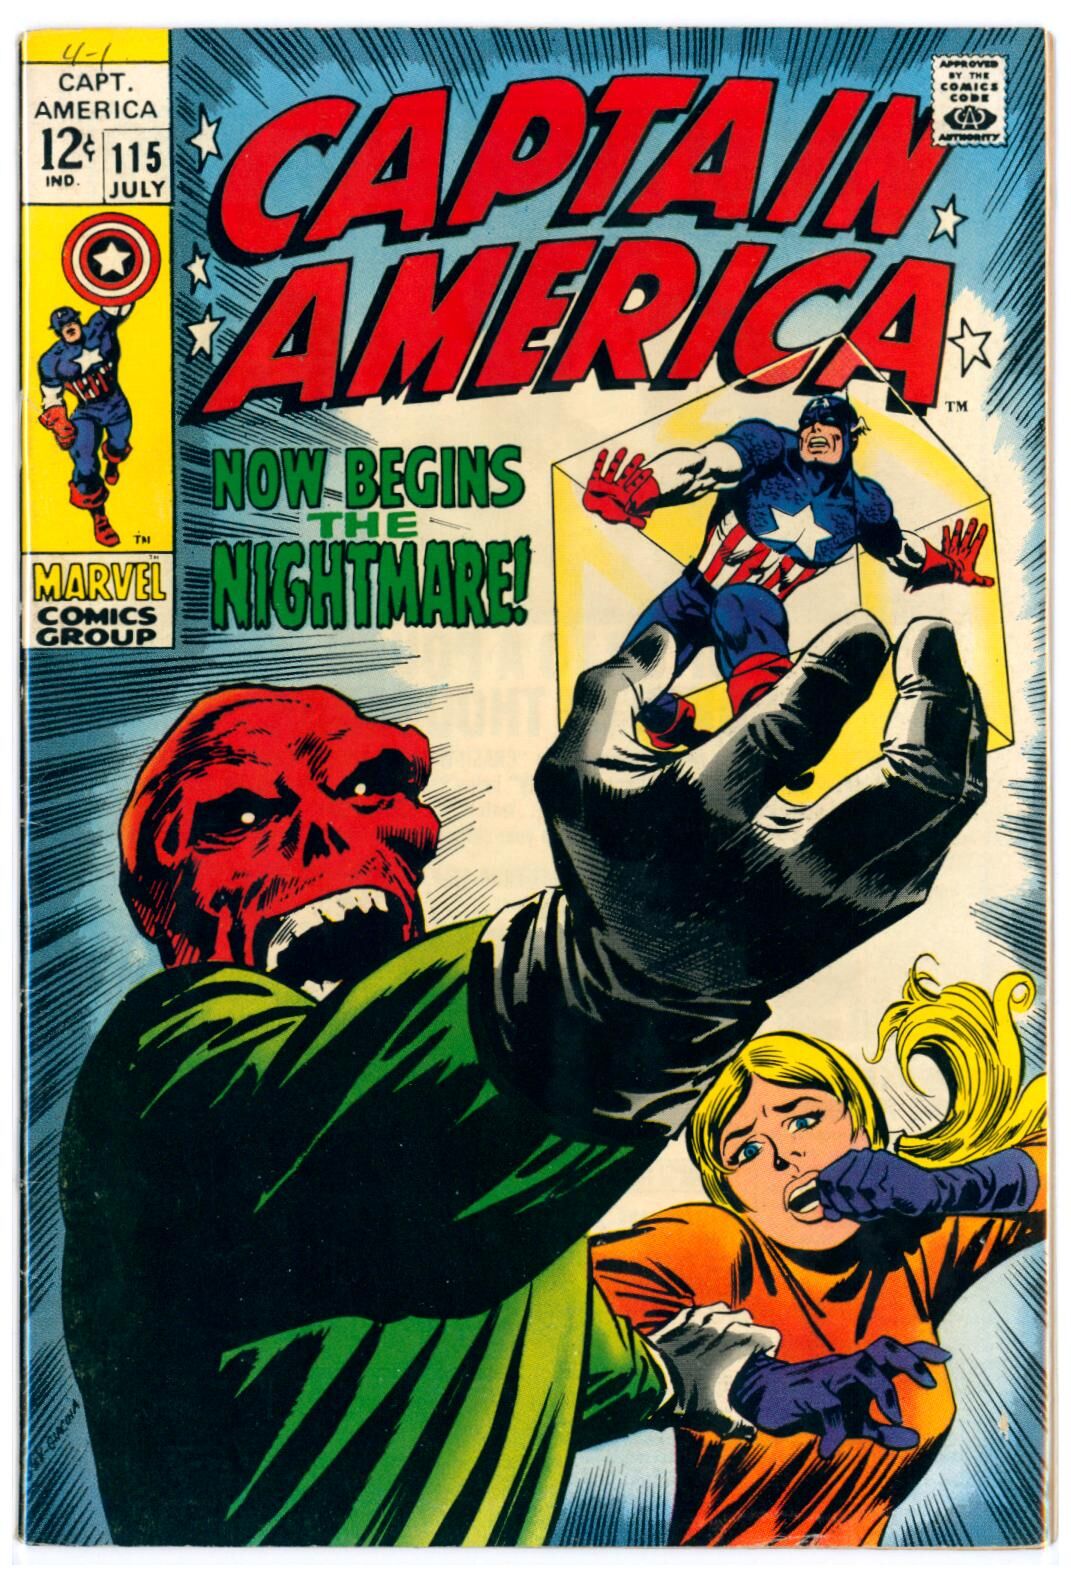 Captain America #115